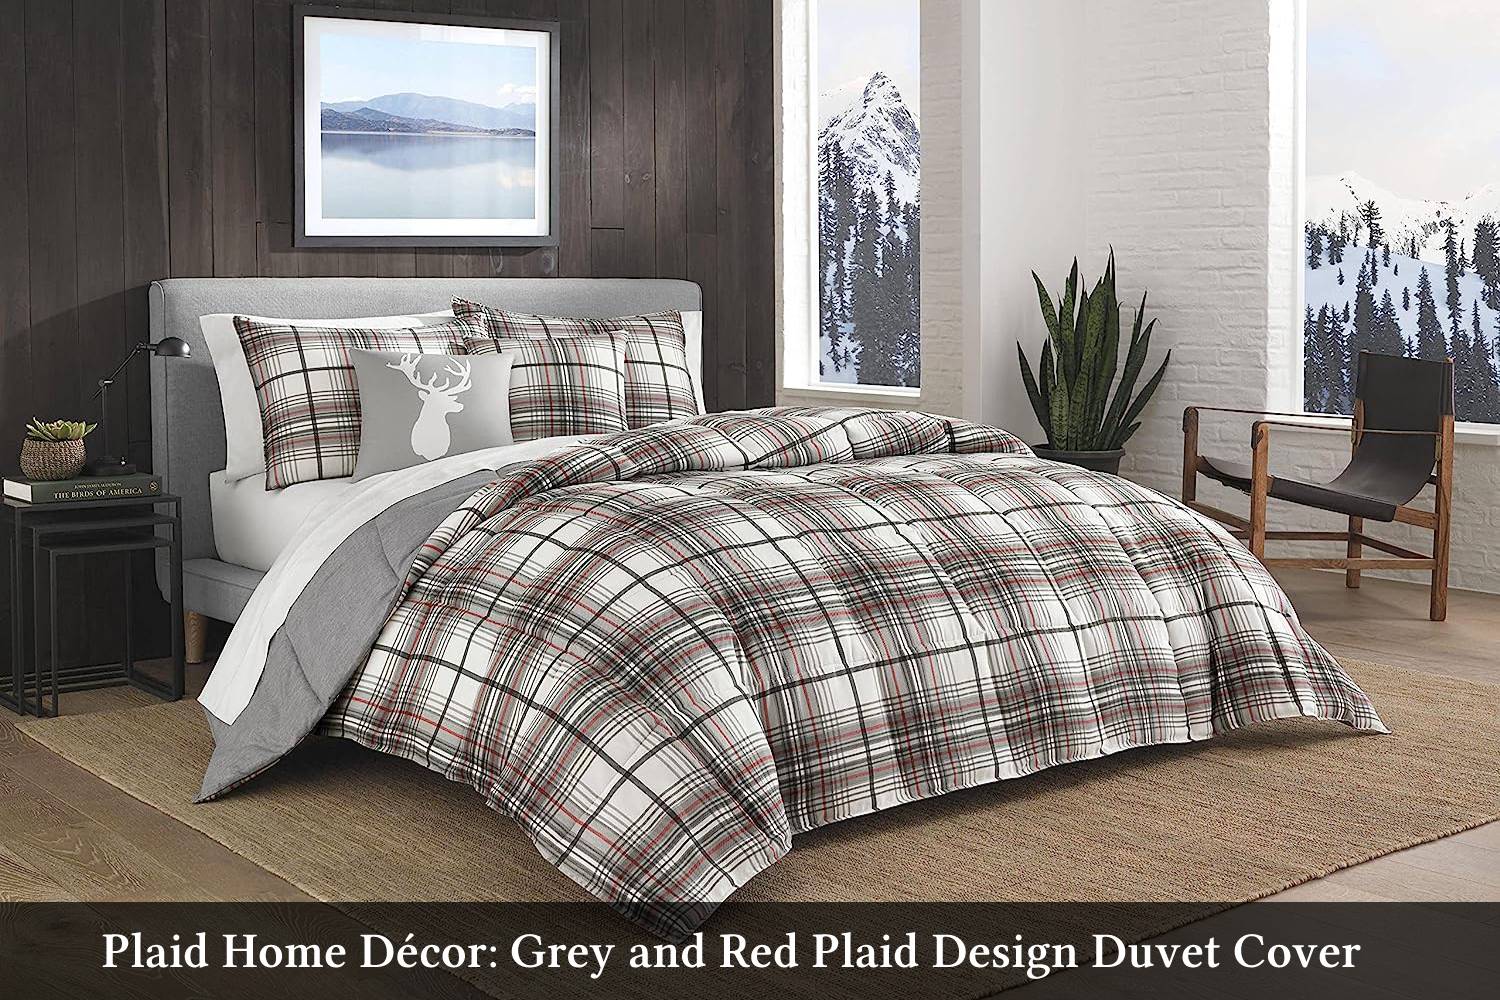 Plaid home décor: Grey and red plaid design duvet cover